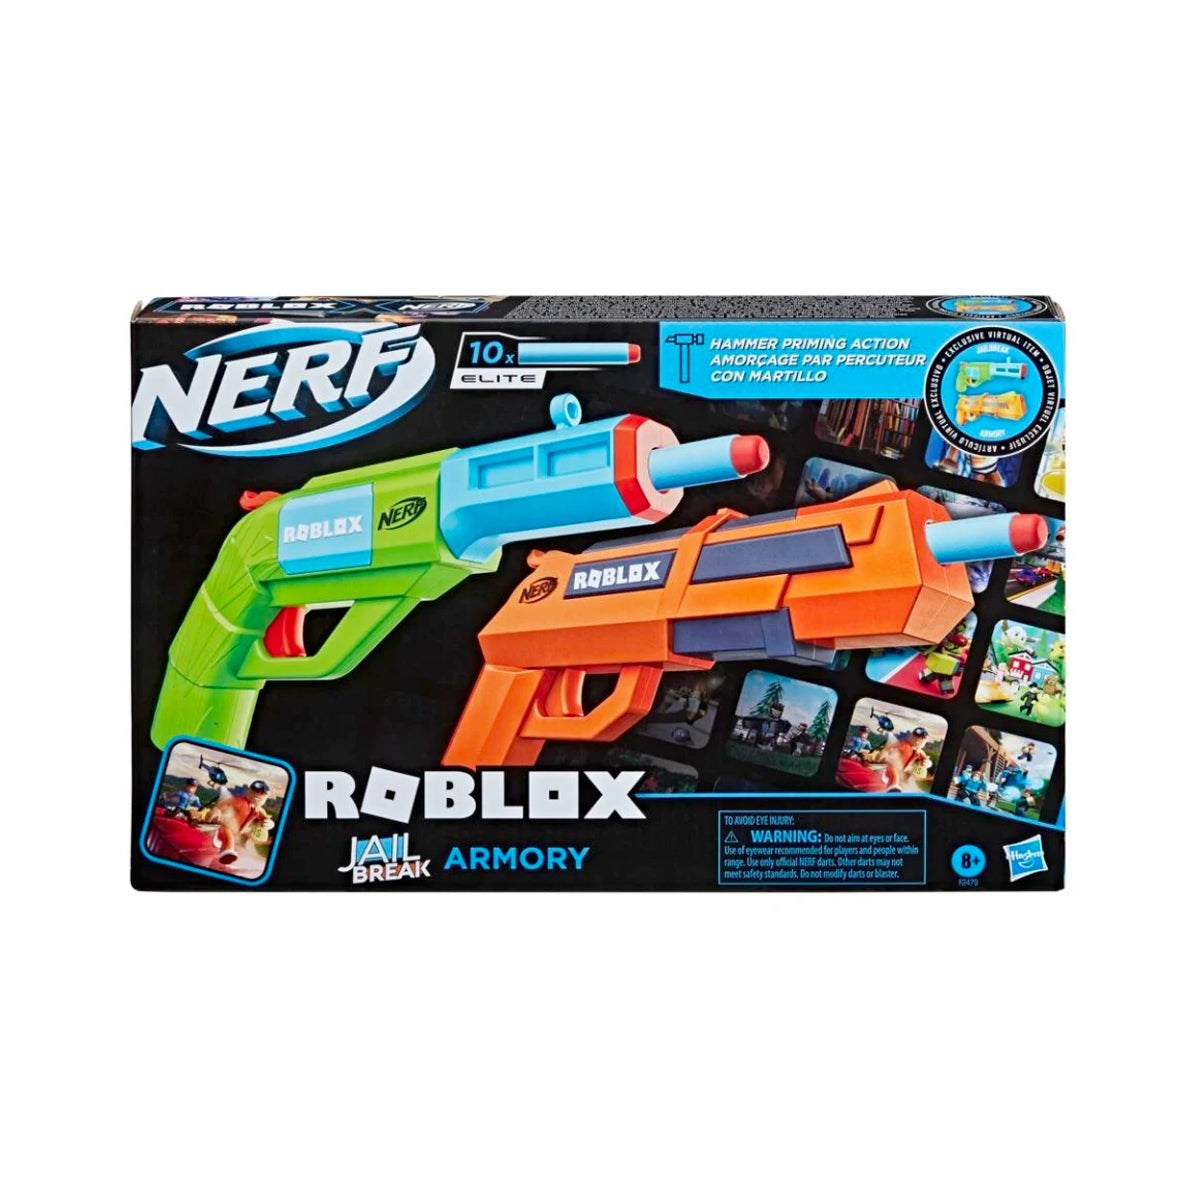 Nerf: Roblox - Jail Break Armory Lanzador De Dardos 2 Pack